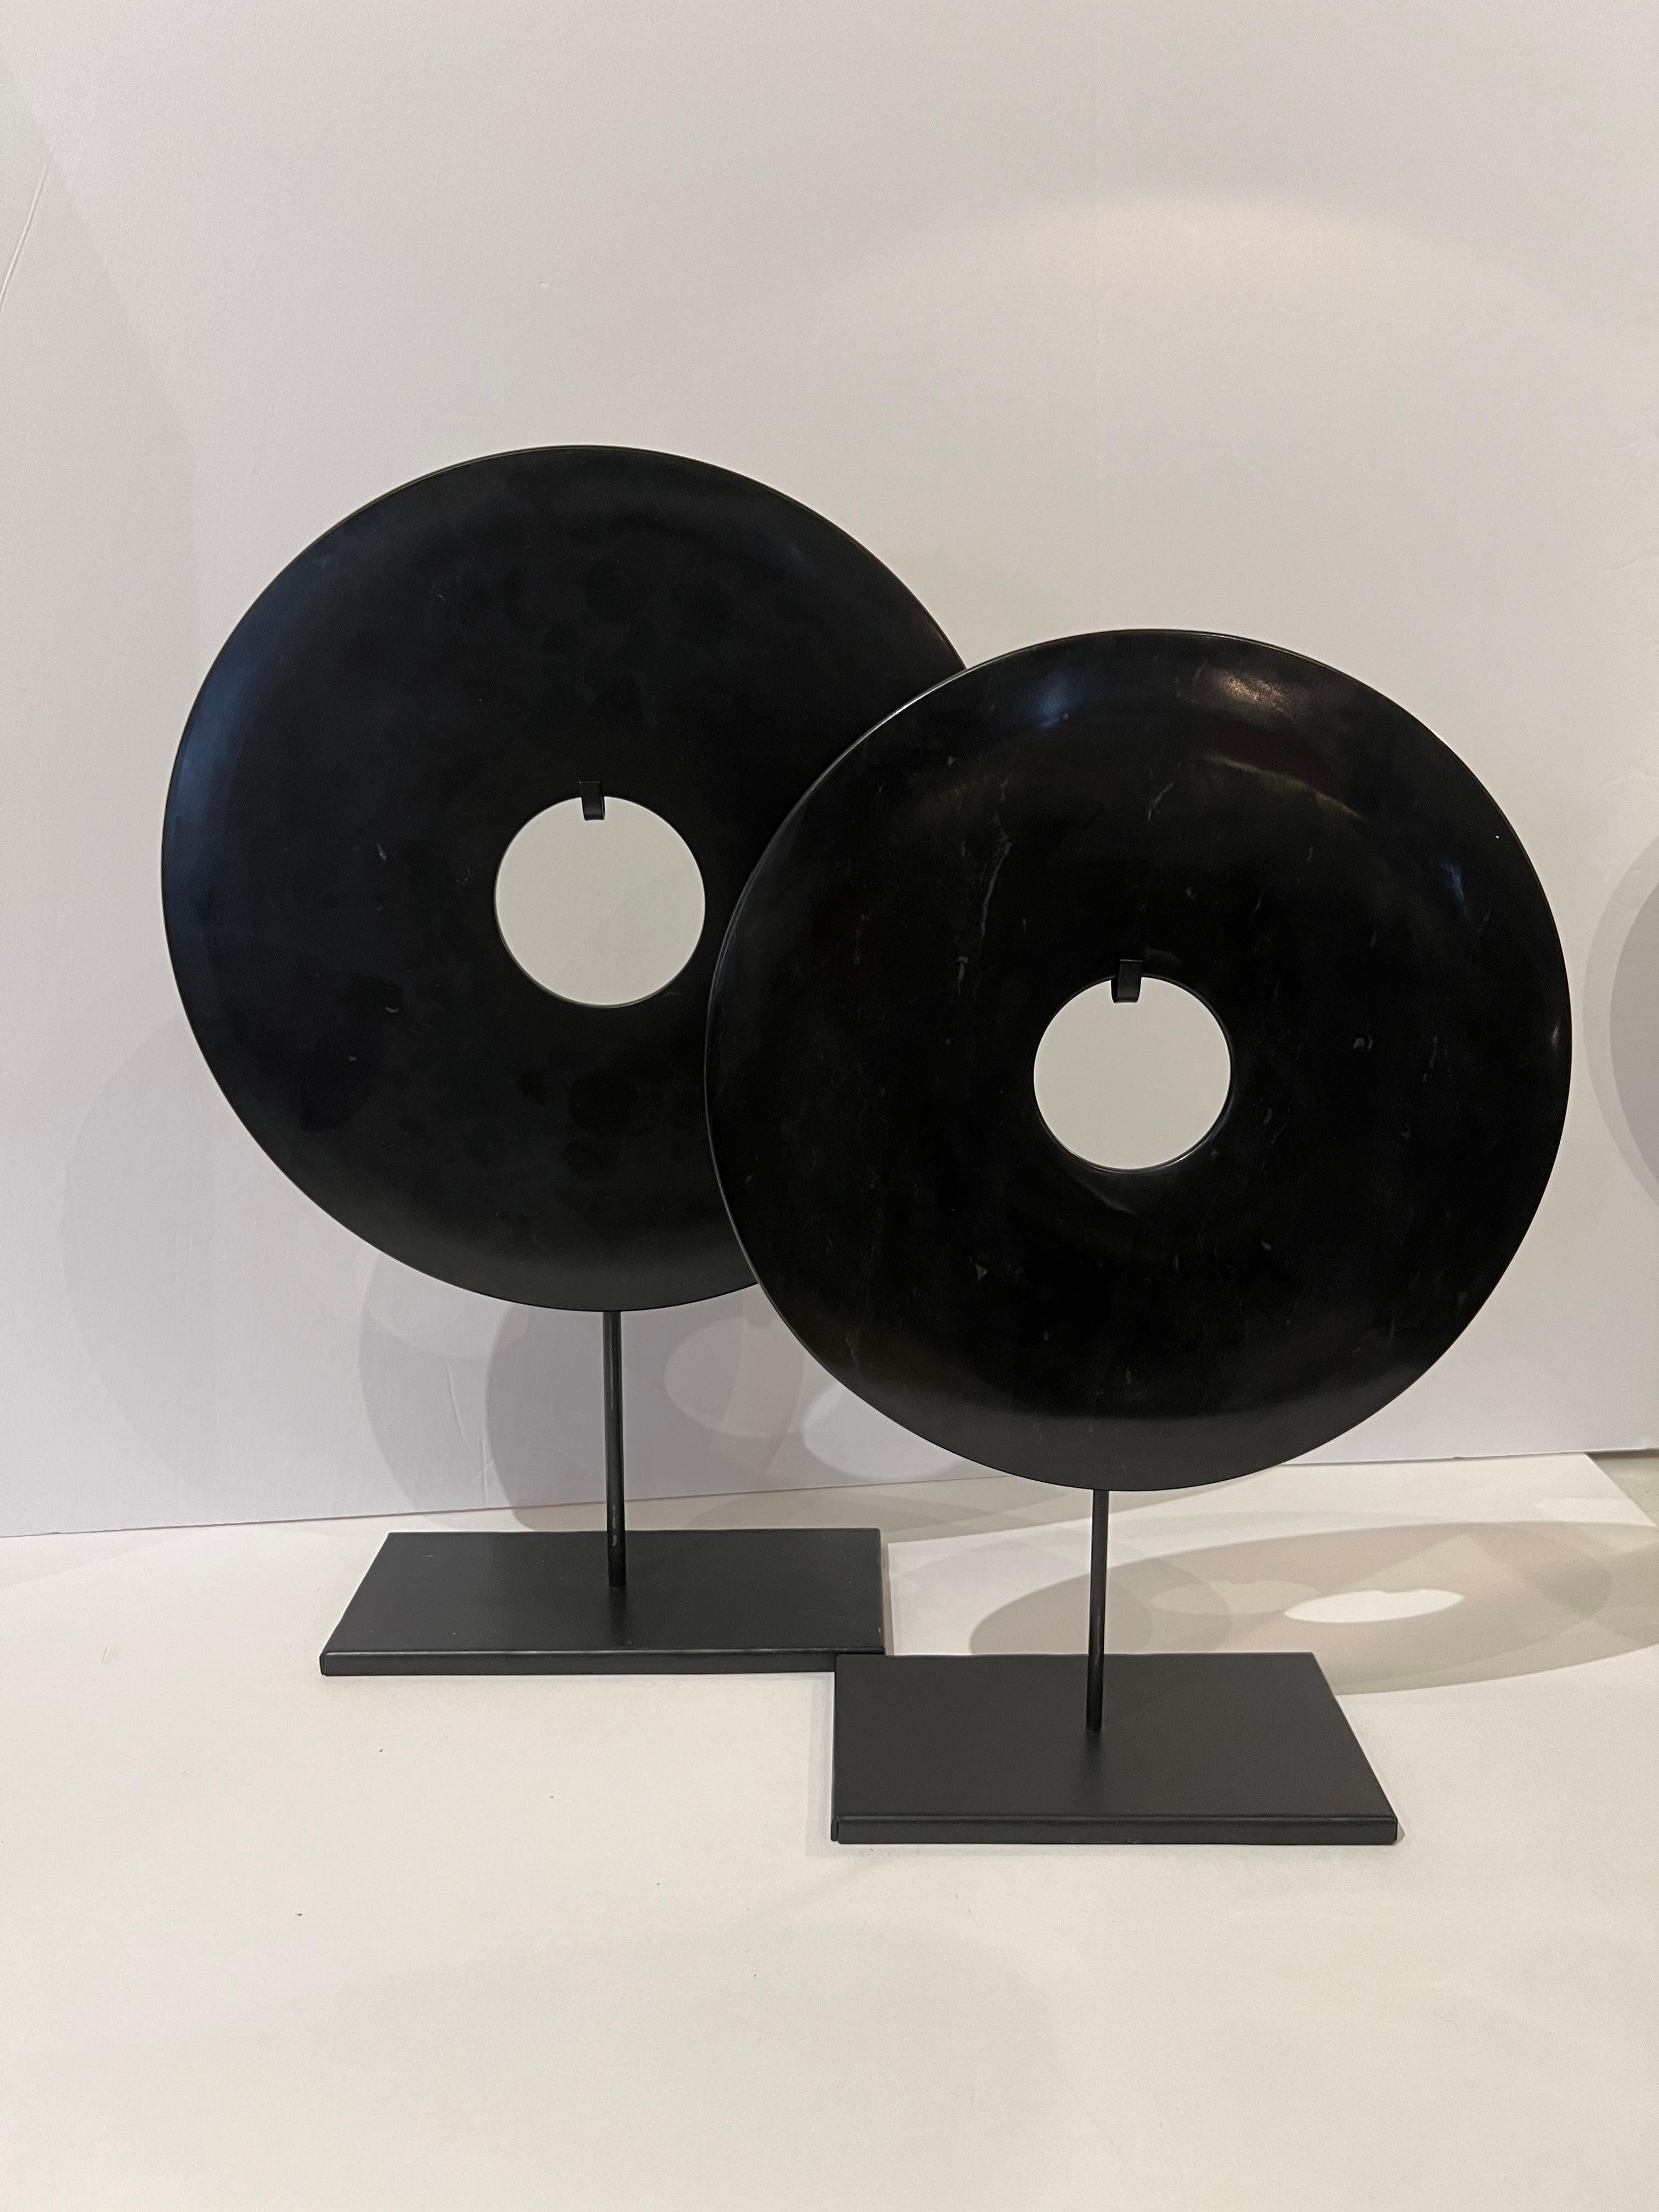 Deux disques lisses en jade noir de la Chine contemporaine.
Egalement disponible en blanc ( S6449 )
Un disque mesure 12